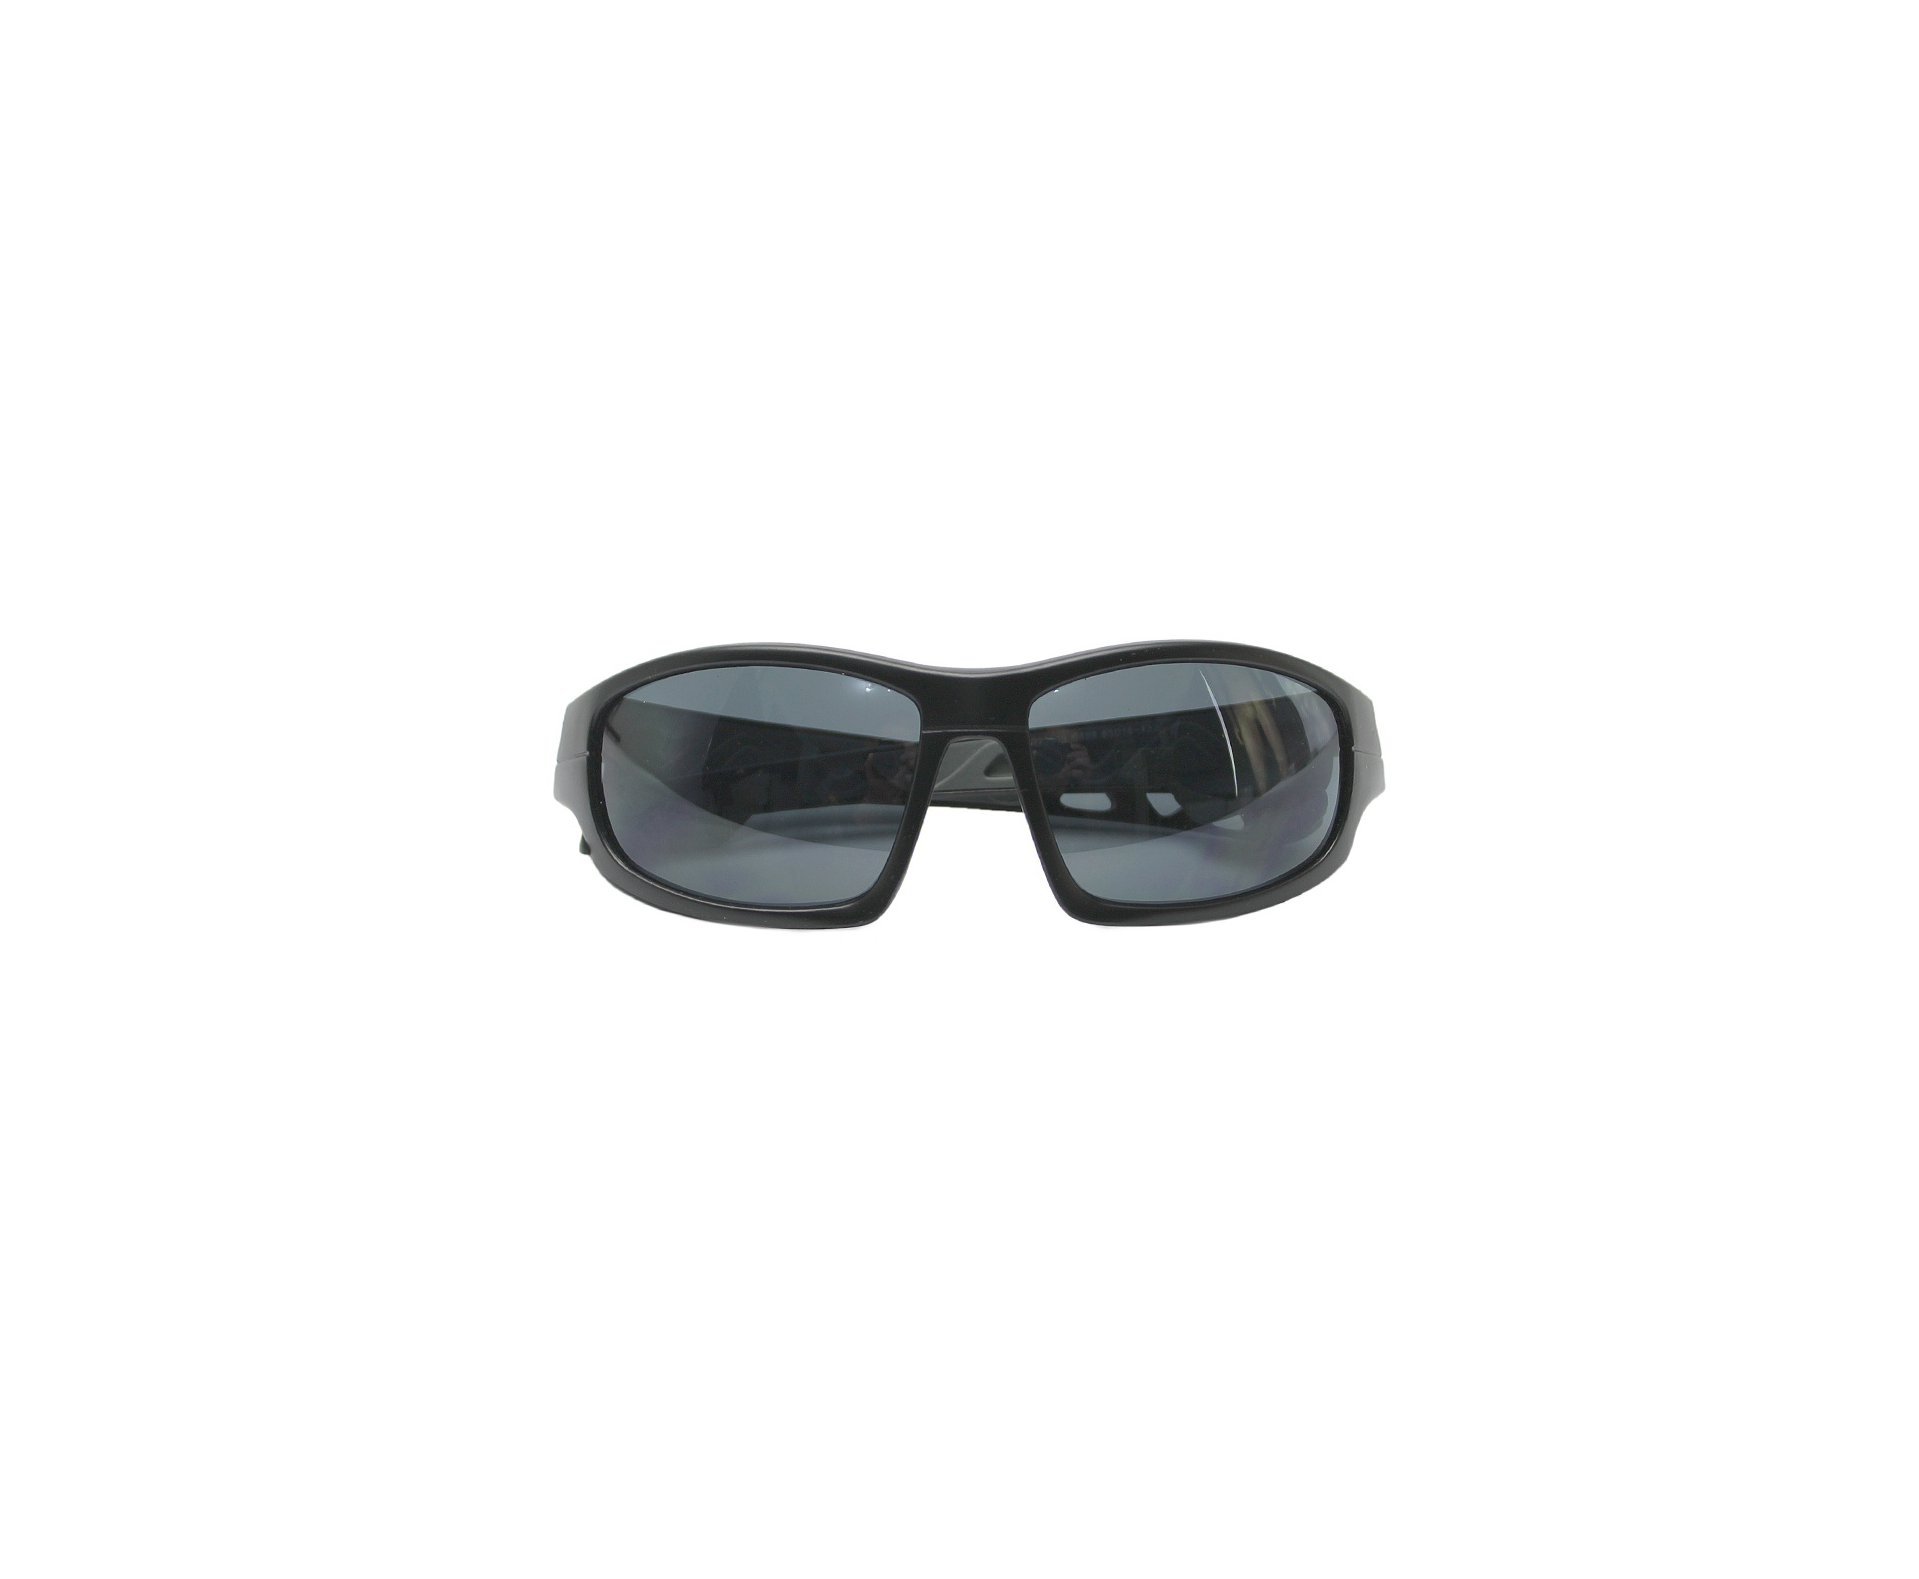 Óculos Insano Shades 2 com Armação Preto Fosco - Lente Preta 20543-C123